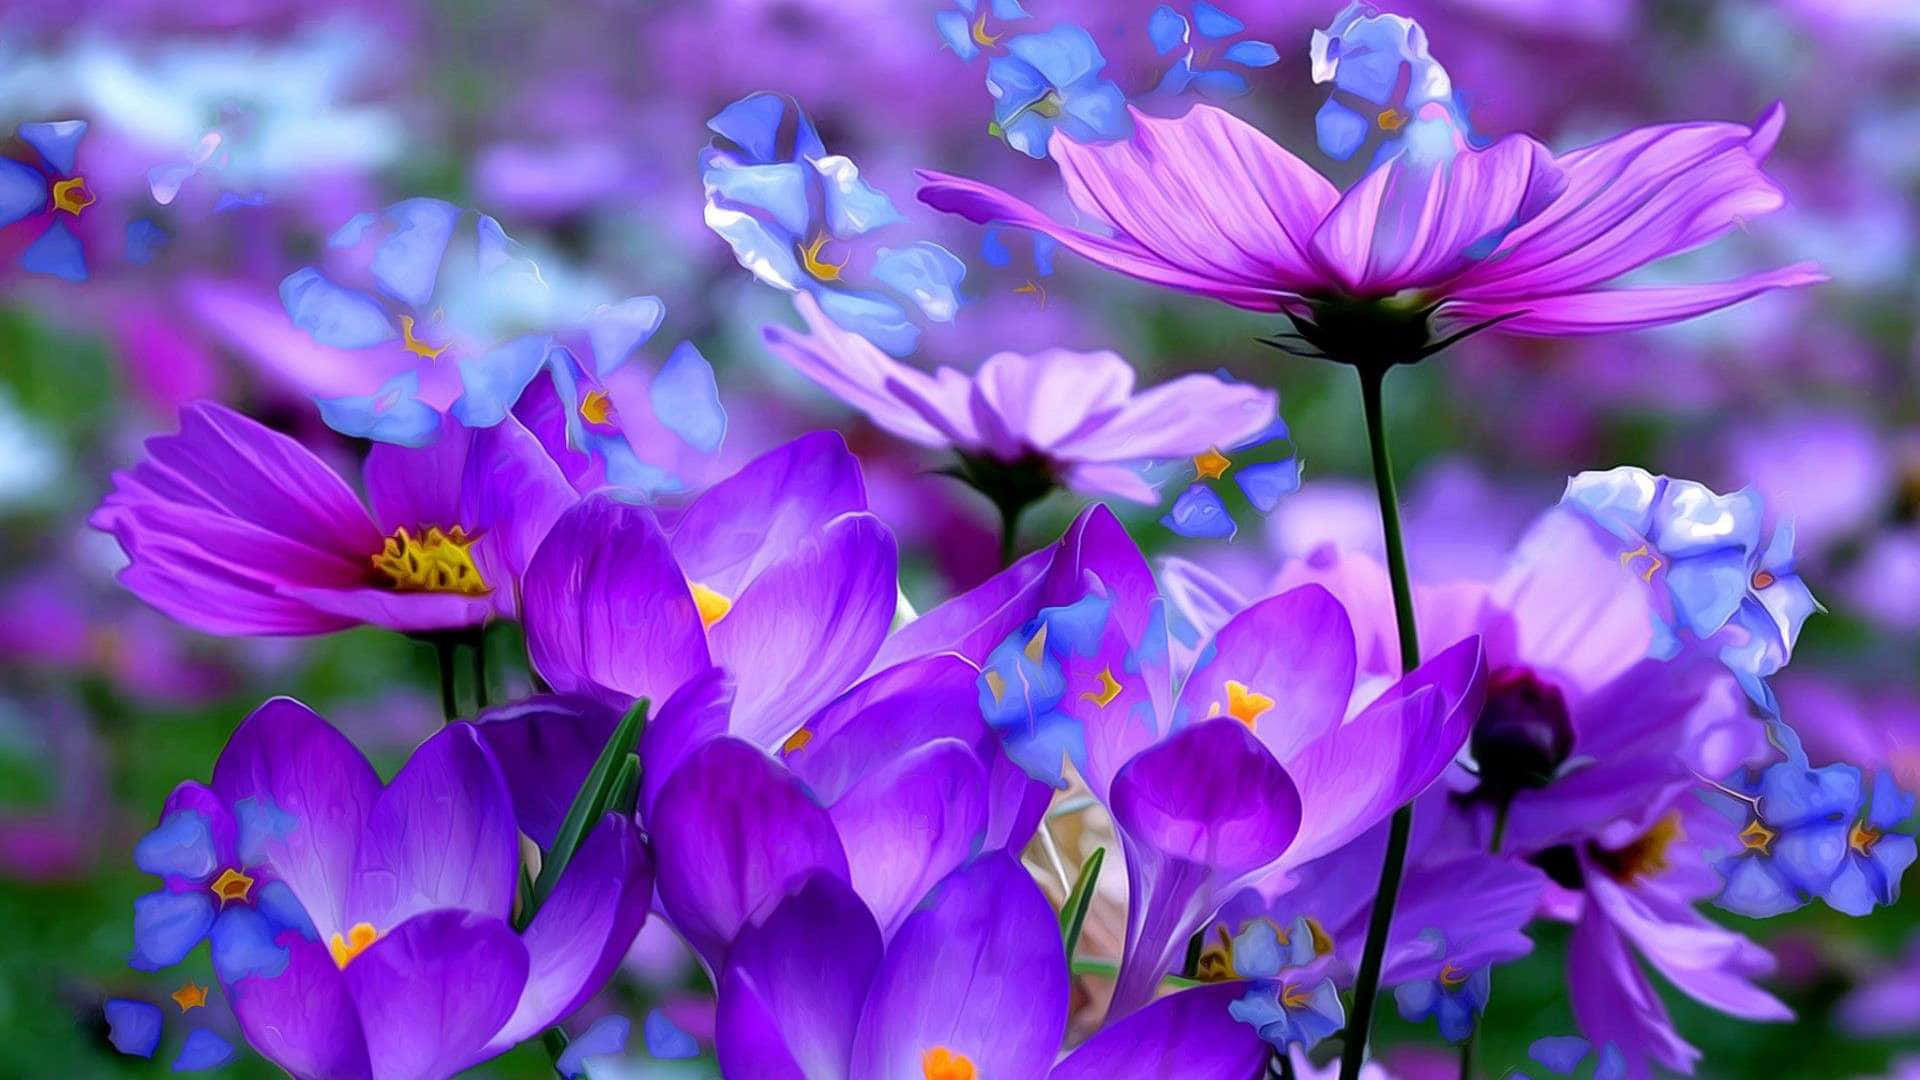 Serene Purple Flowers Field Background